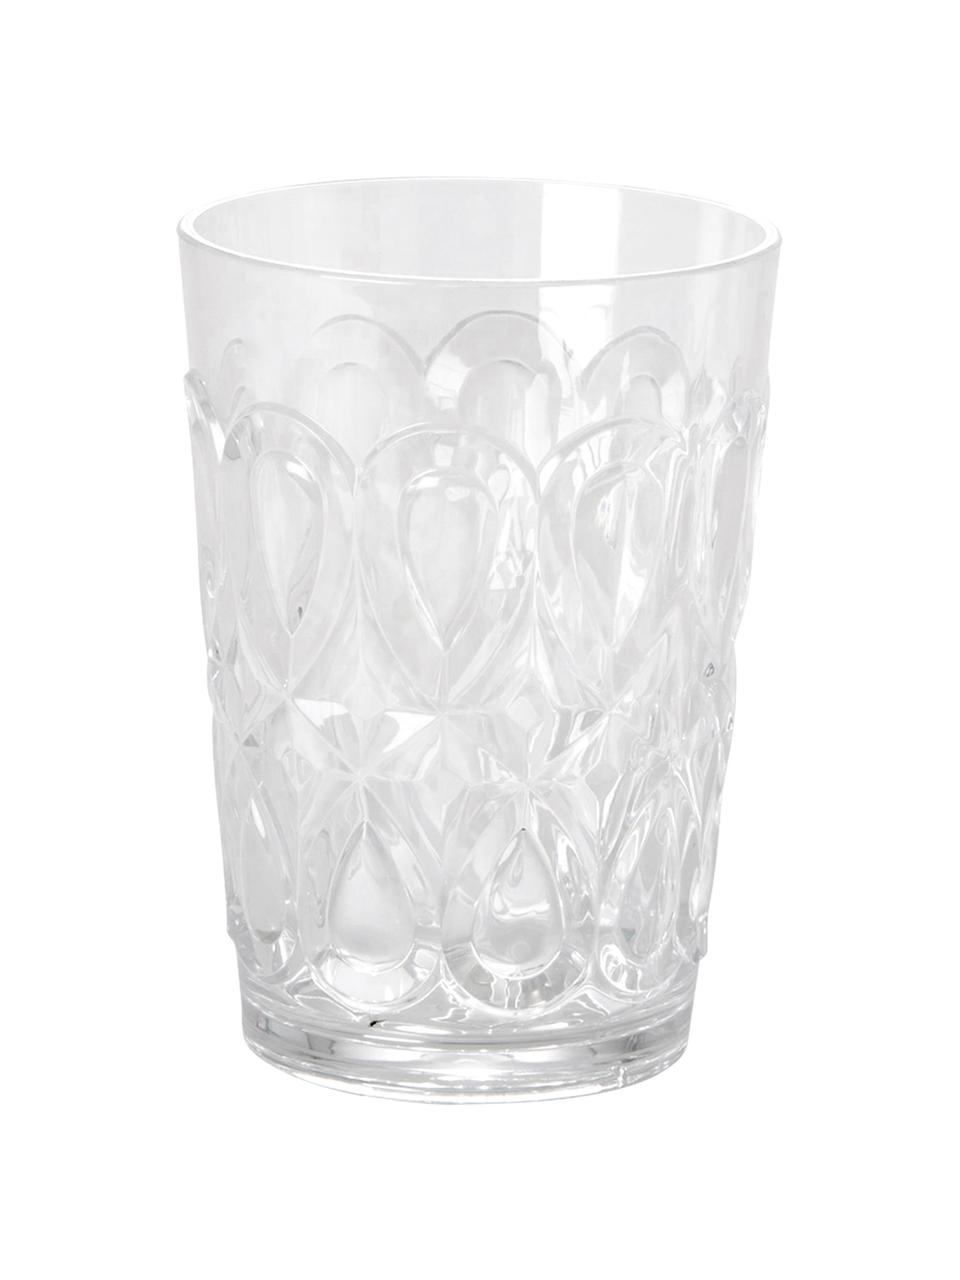 Akrylová sklenice Swirly, 2 ks, Transparentní